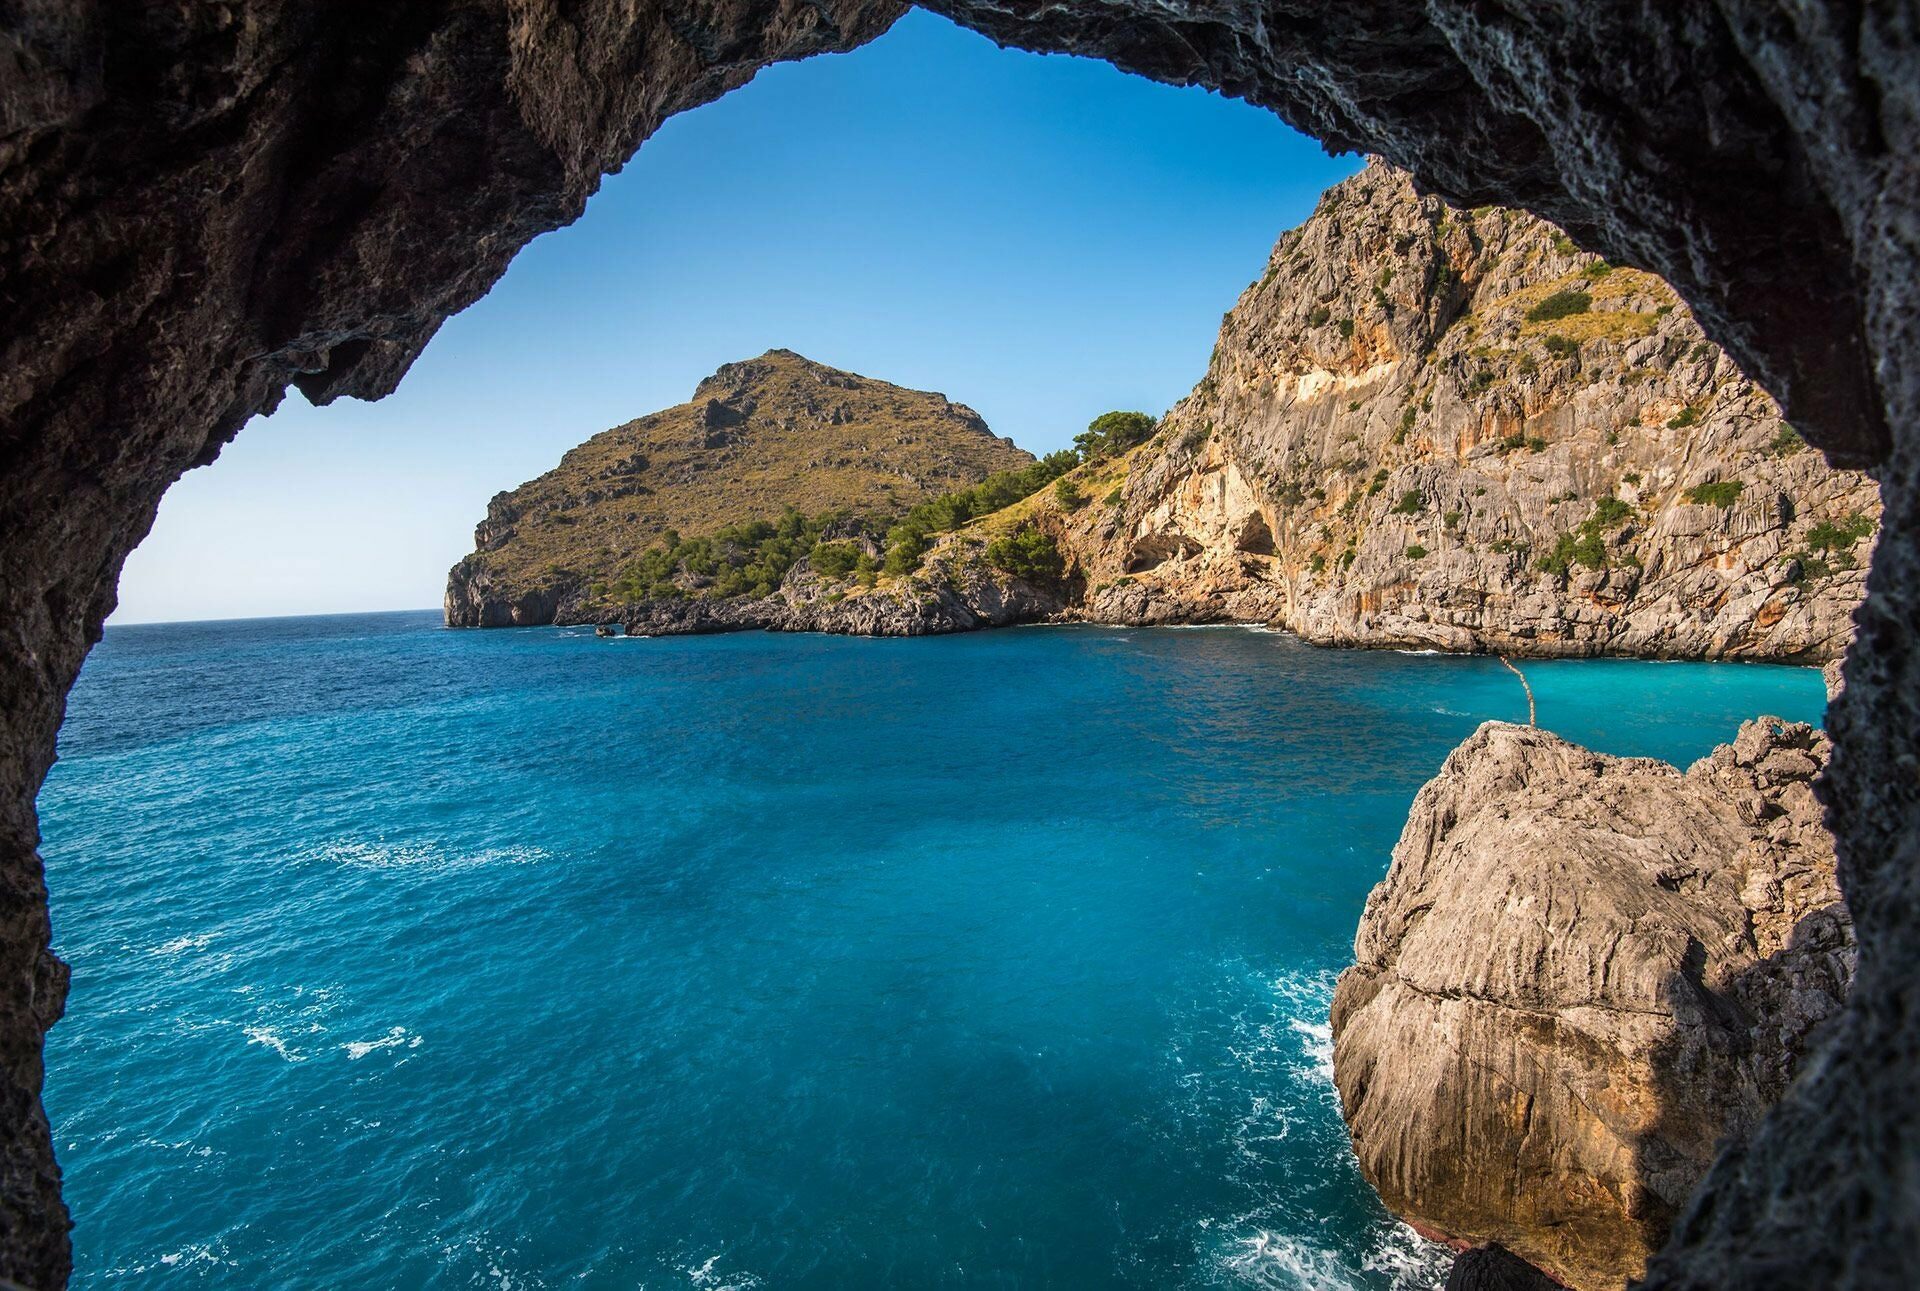 Fotografia scattata dentro una grotta con vista sul mare blu intenso e sulla costa pugliese